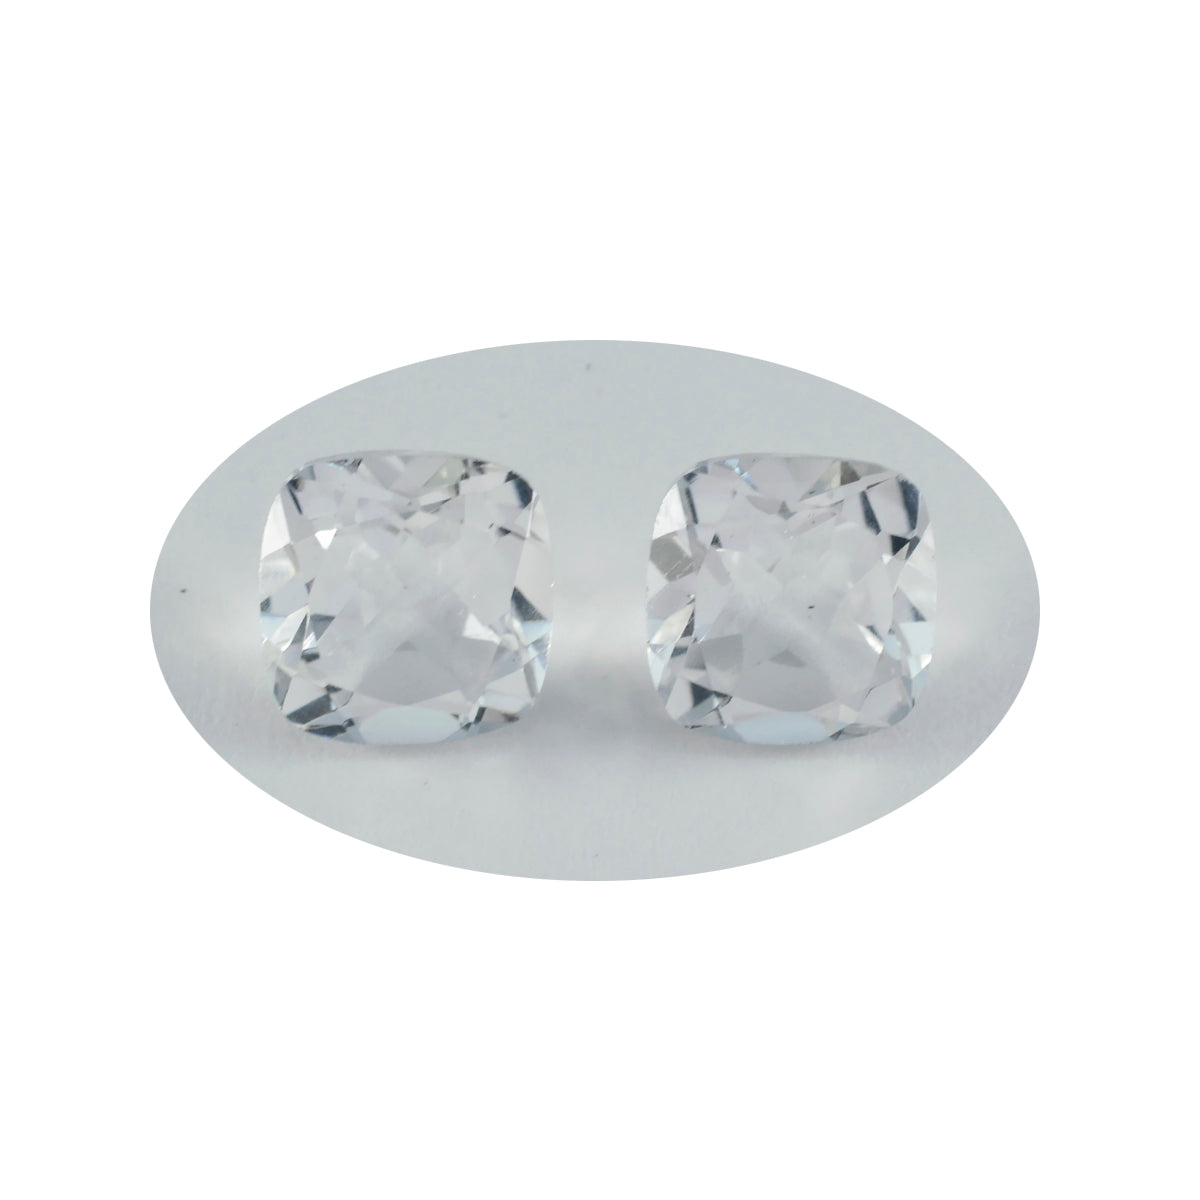 Riyogems 1PC Wit Kristal Kwarts Facet 11x11 mm Kussenvorm uitstekende kwaliteit losse edelsteen